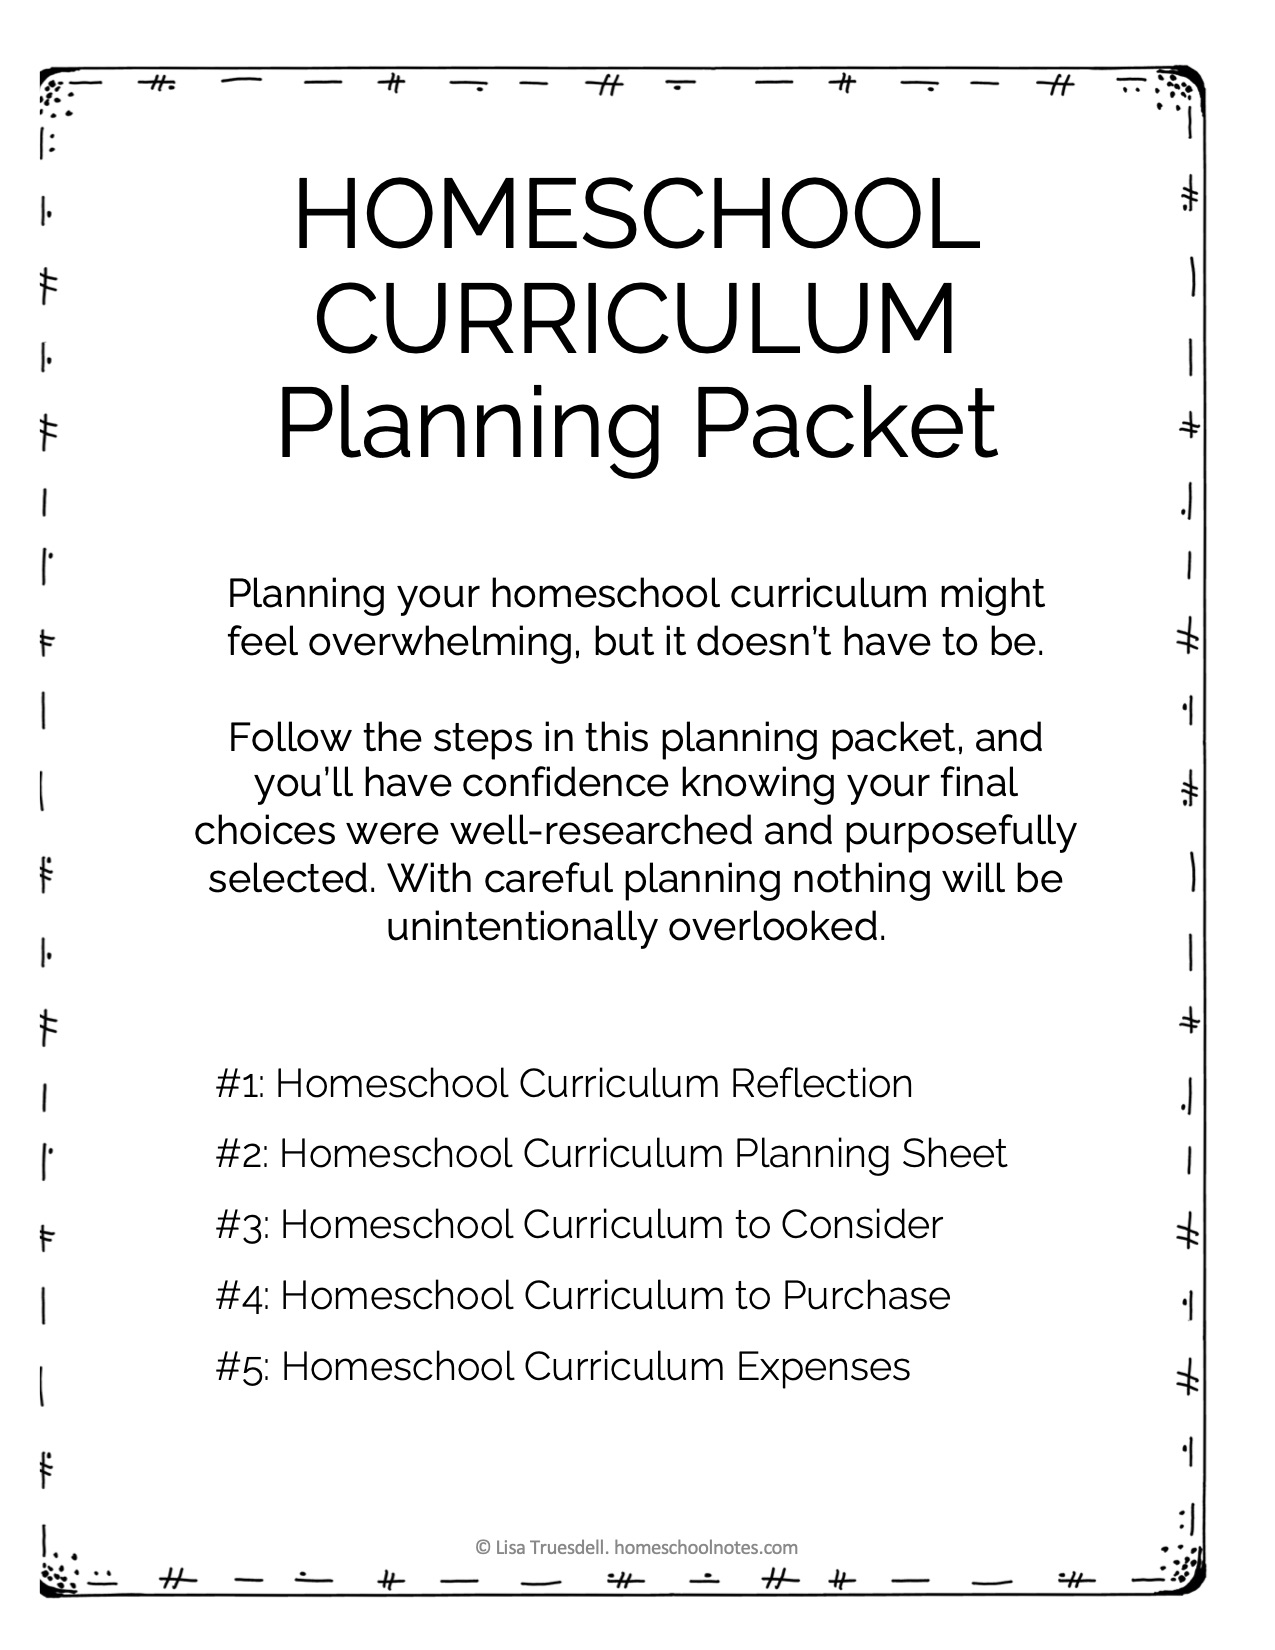 Homeschool Curriculum Planning Packet | Homeschool Notes